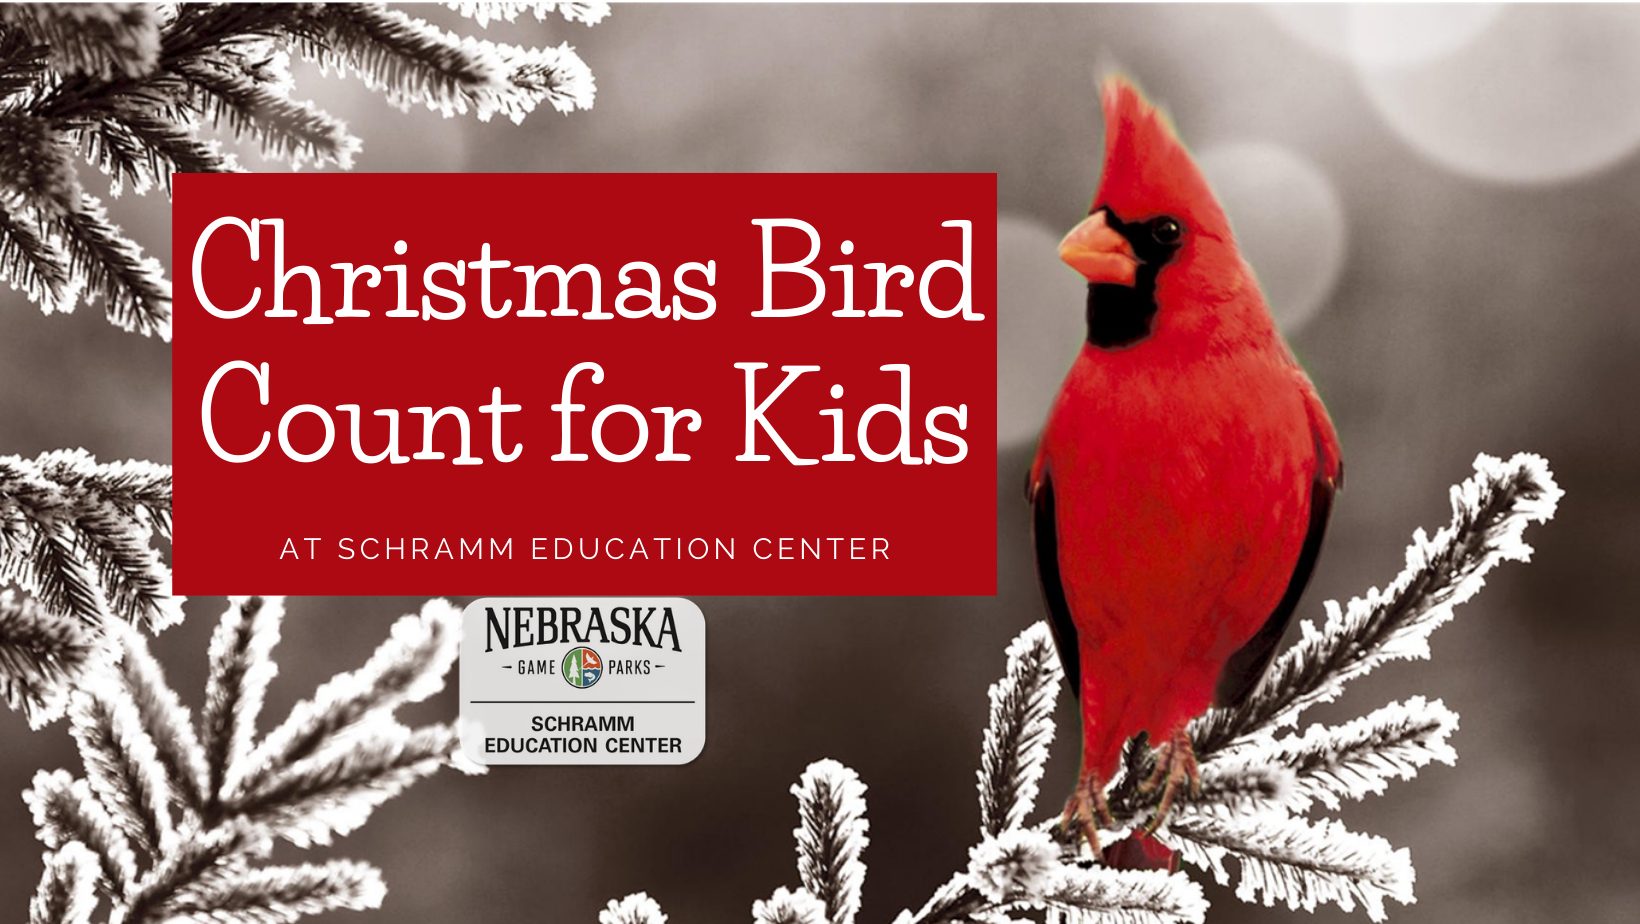 Kids　and　Outdoor　at　Parks　Schramm　Game　Christmas　Outdoor　Nebraska　Calendar　Bird　for　Count　Nebraska